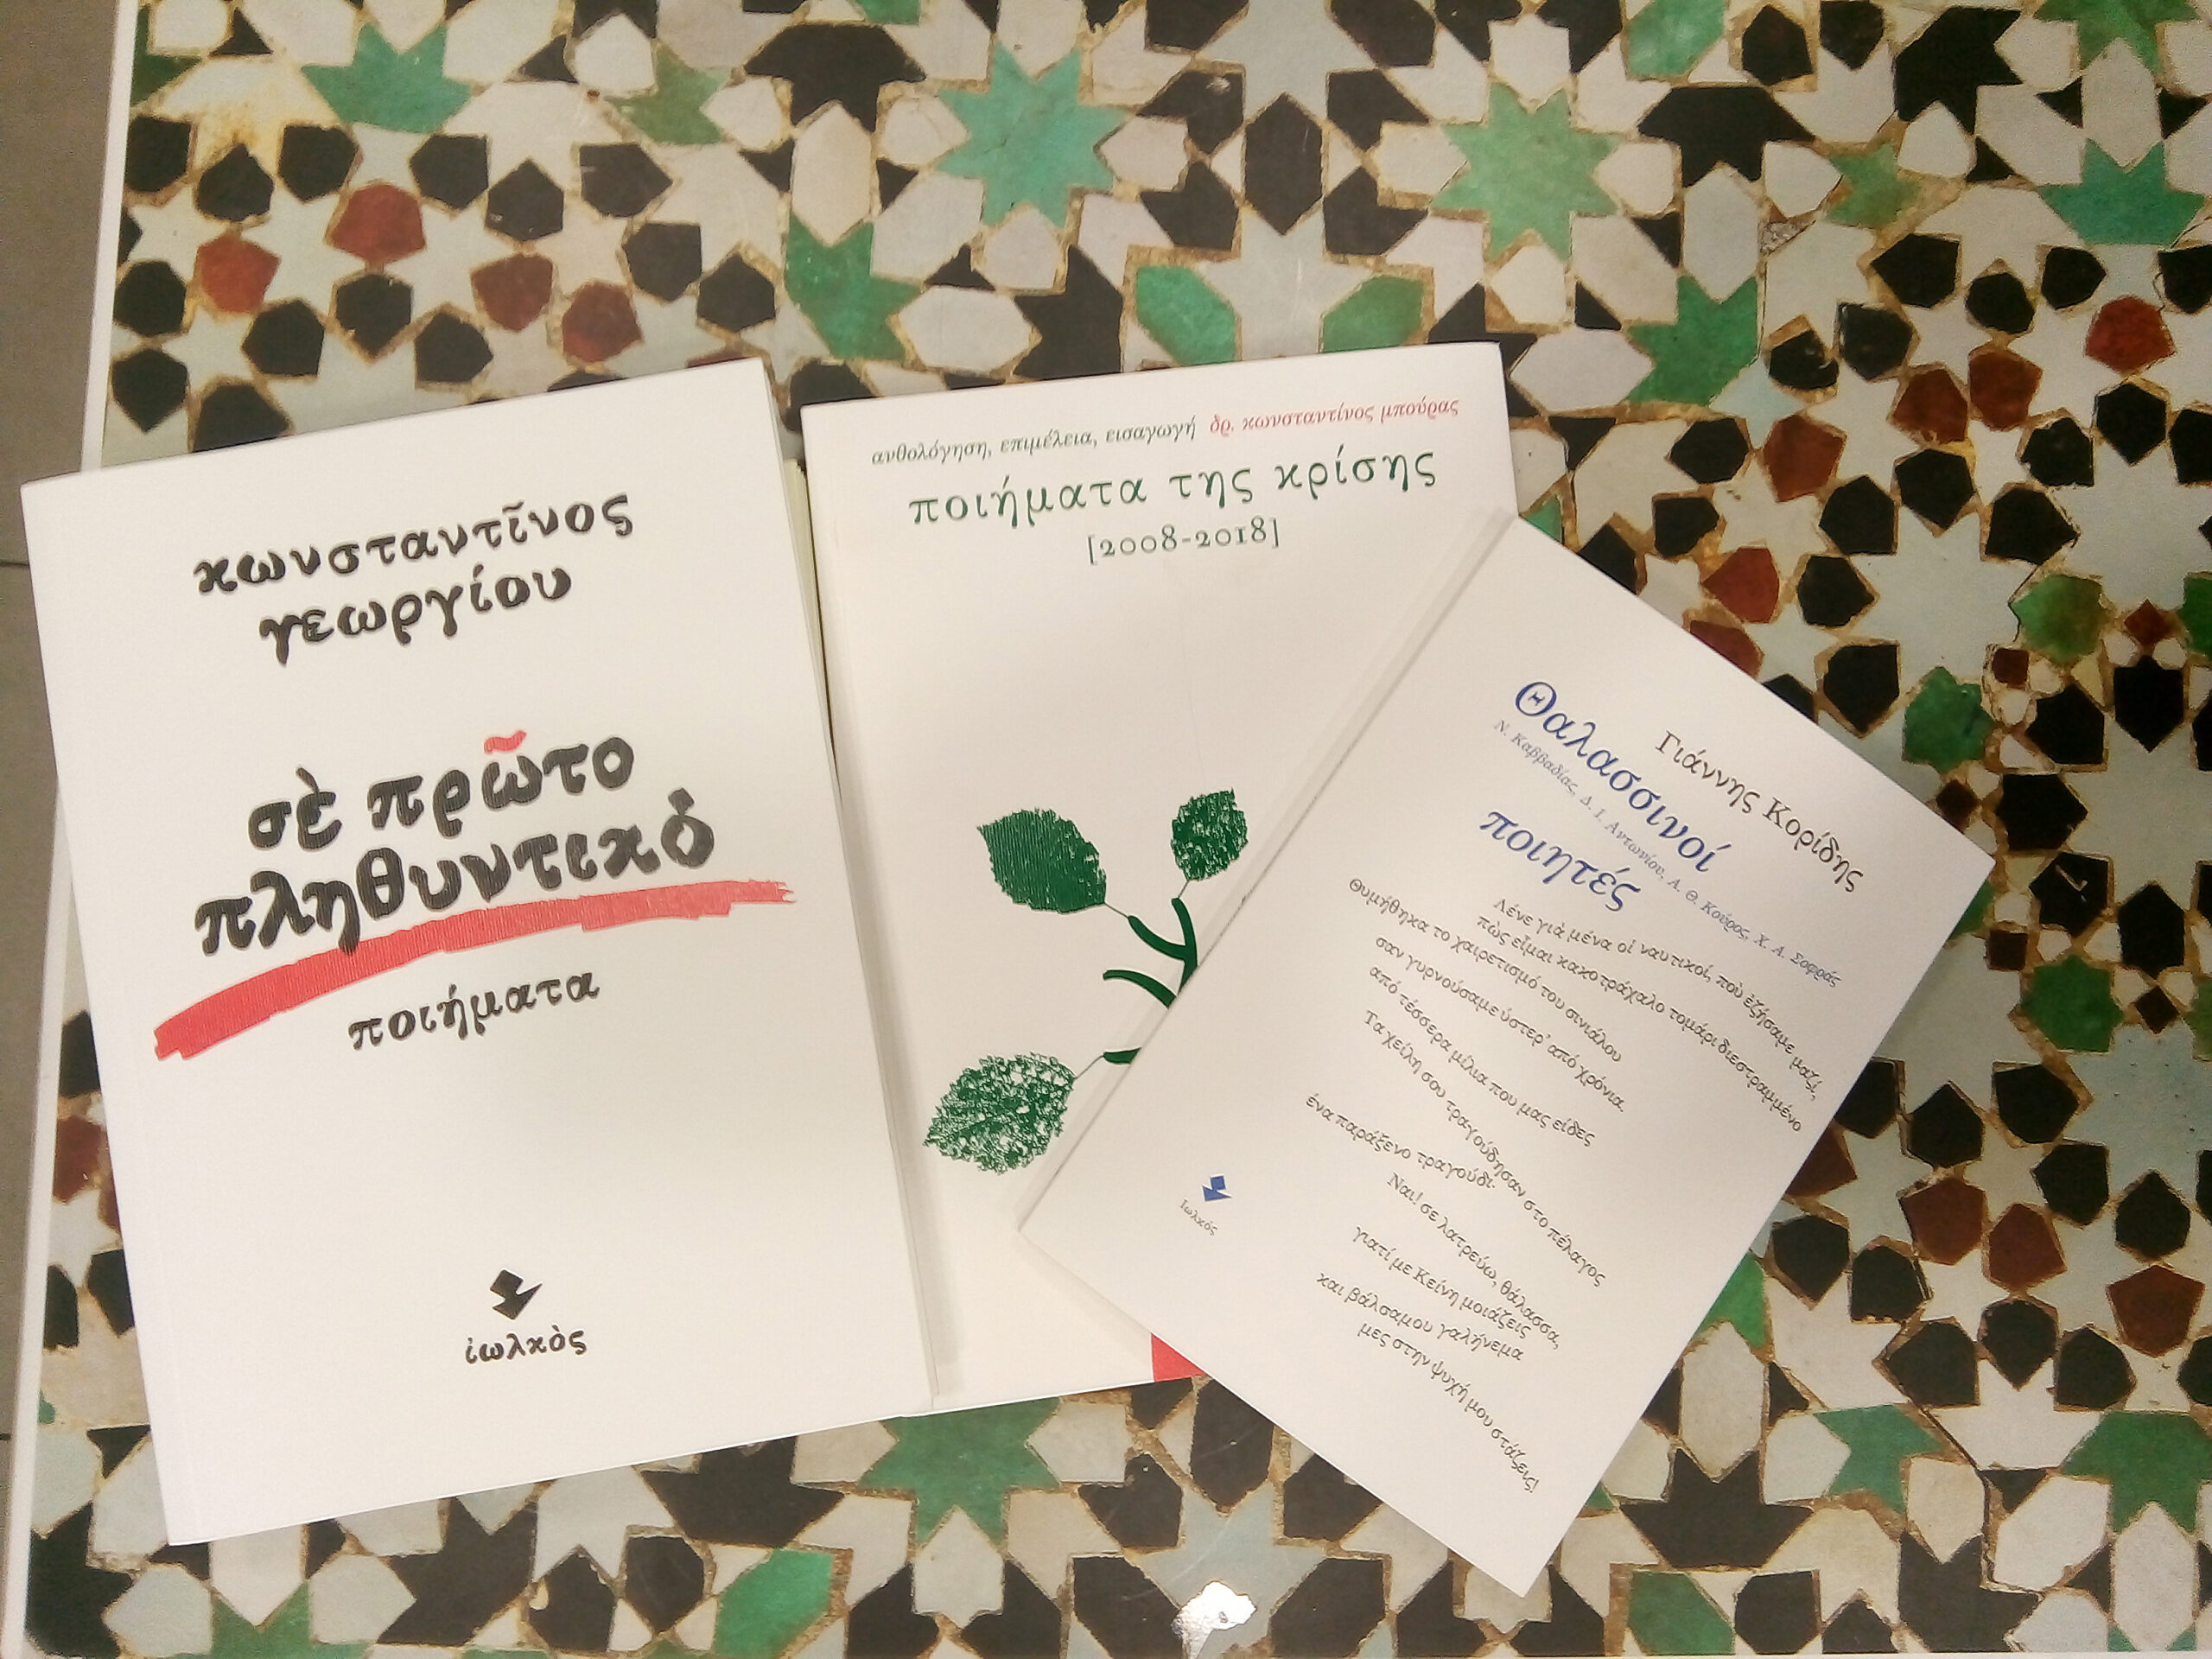 Βιβλία των εκδόσεων Ιωλκός | Βιβλιοπωλείο Ιανός